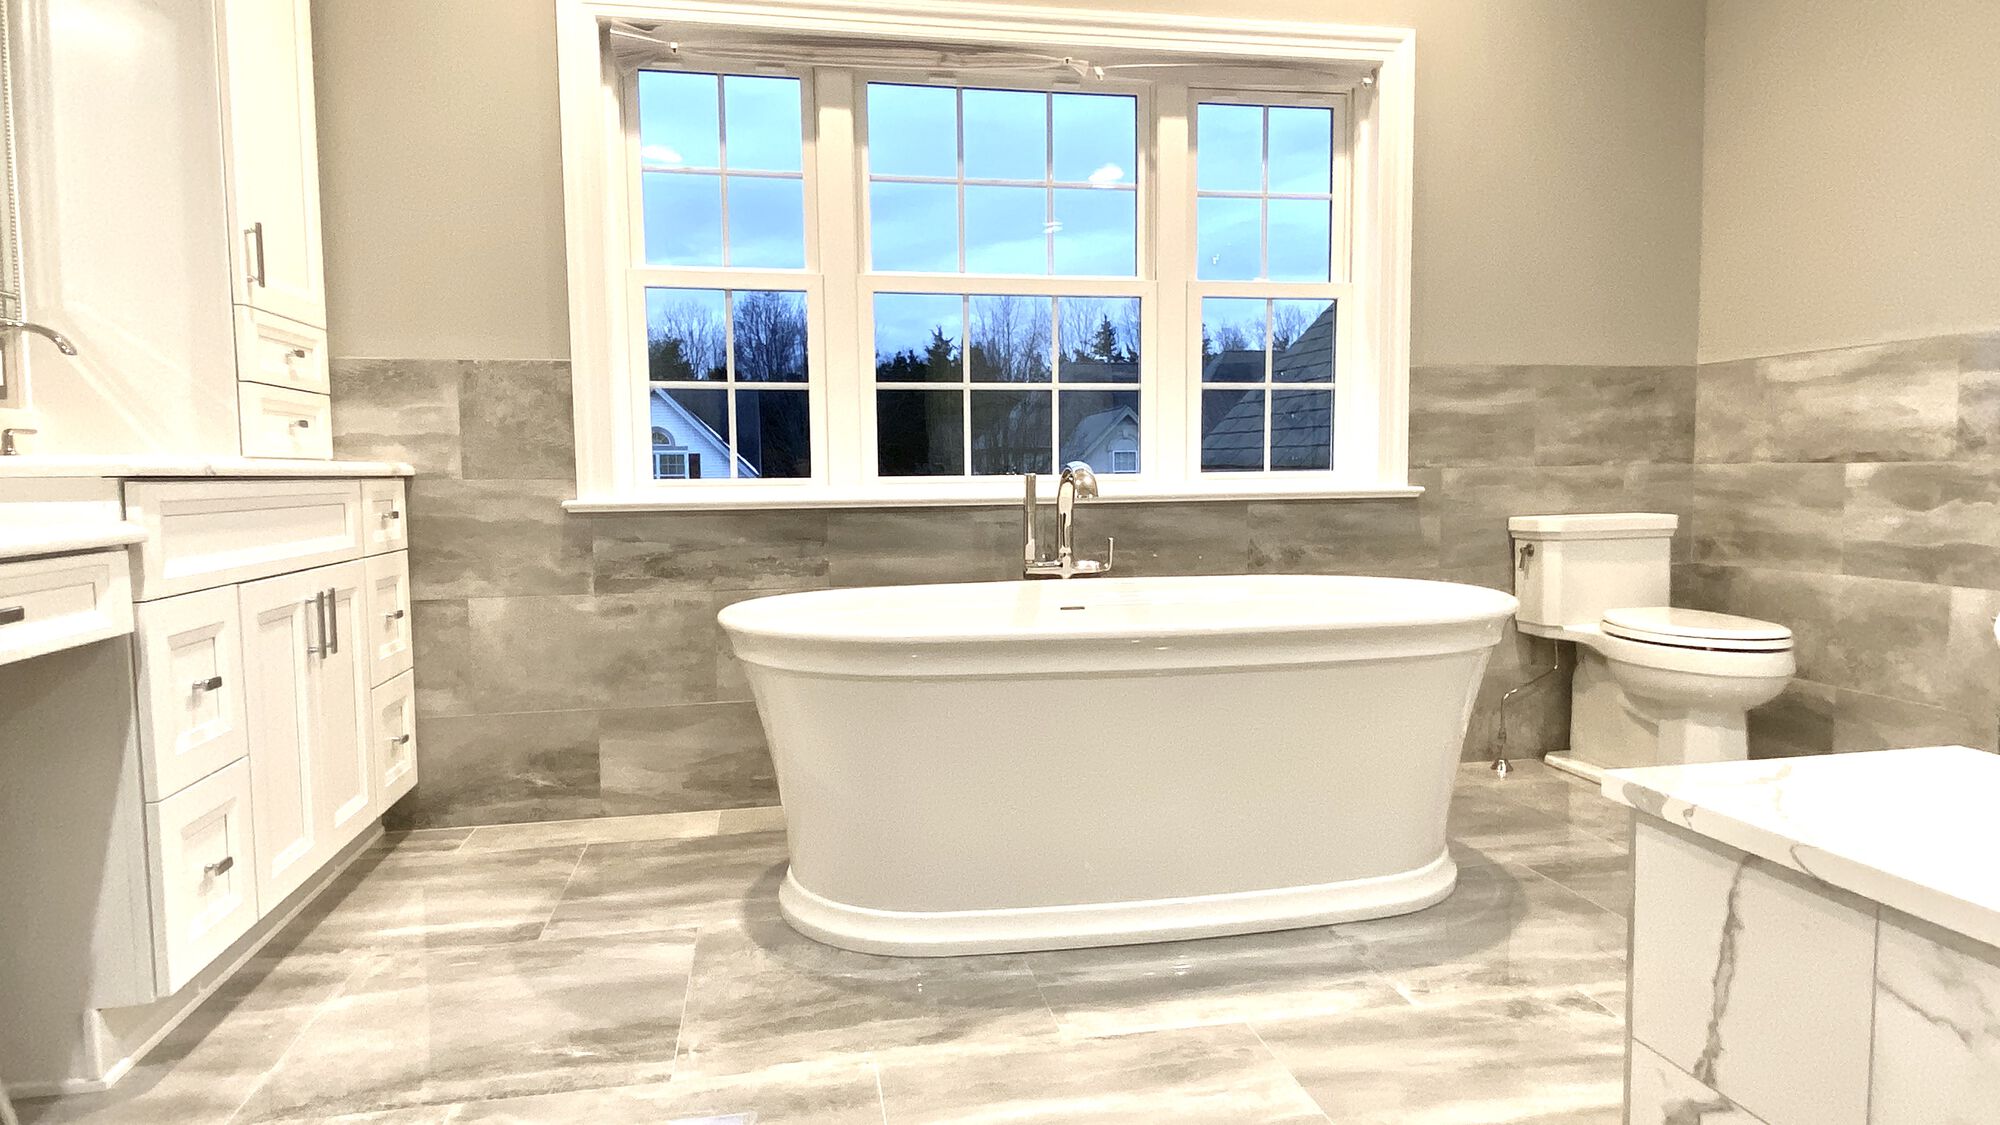 Bathroom Remodeling with Kohler Fixtures and Porcelain Tile _ Somerset NJ